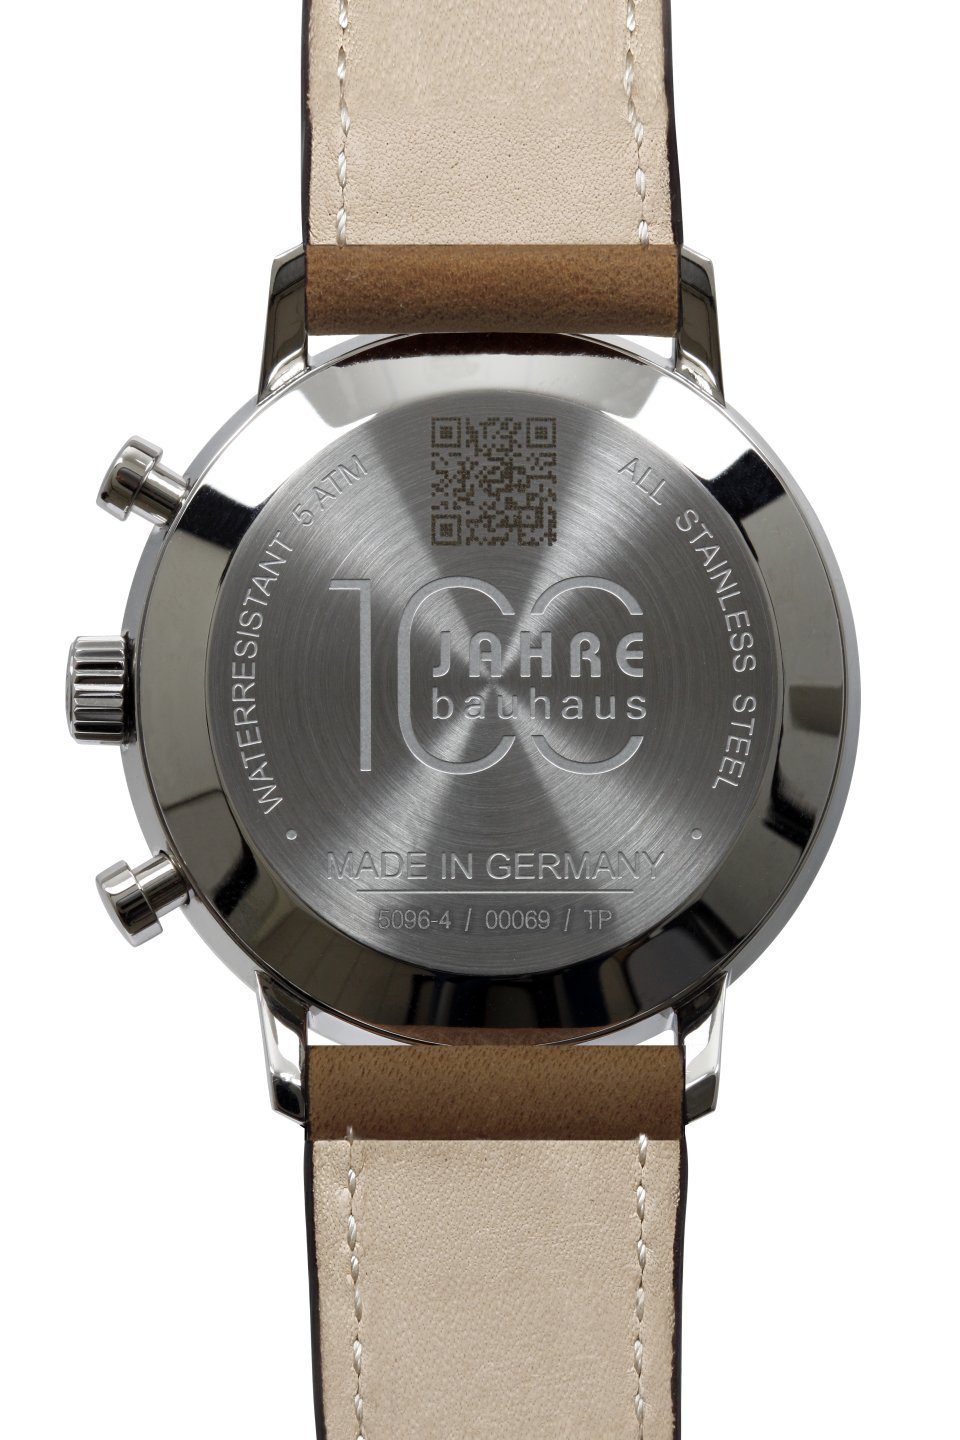 IRON ANNIE Chronograph 100 Jahre Bauhaus Herrenuhr 5096-4 Weiss Lederband  Braun 41 mm, Made in Germany | Solaruhren